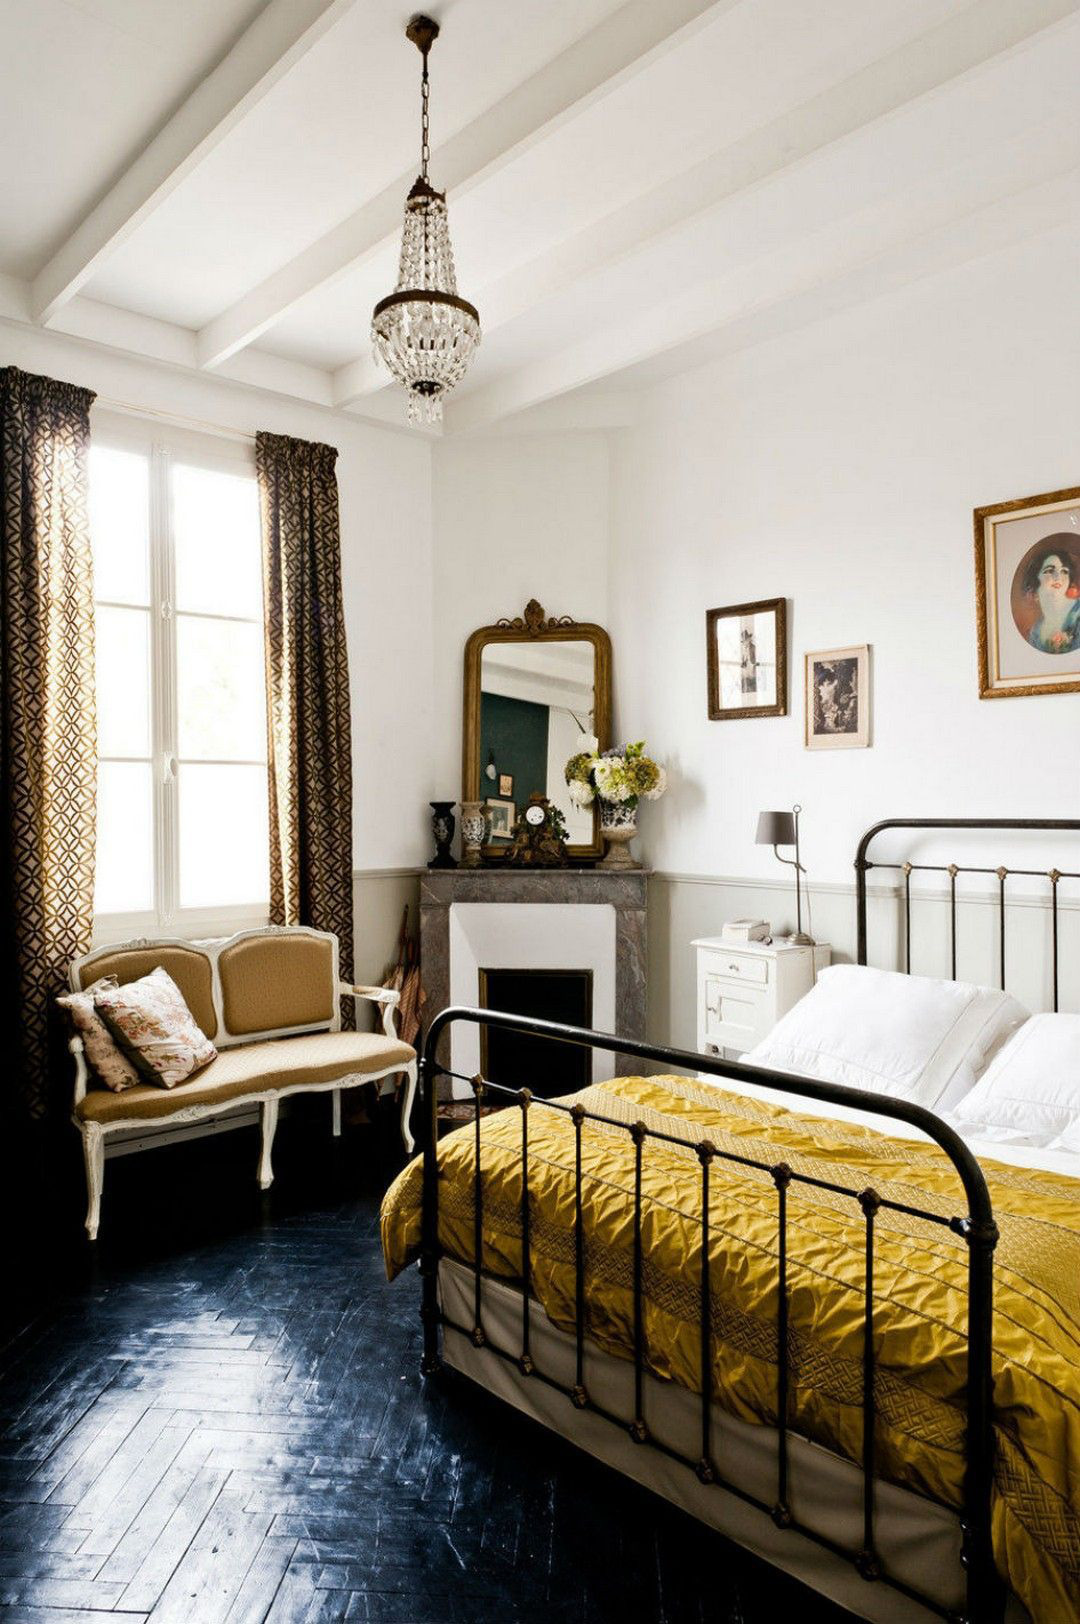 15 ý tưởng màu sắc phòng ngủ theo phong cách cổ điển ngọt ngào - Ảnh 12.